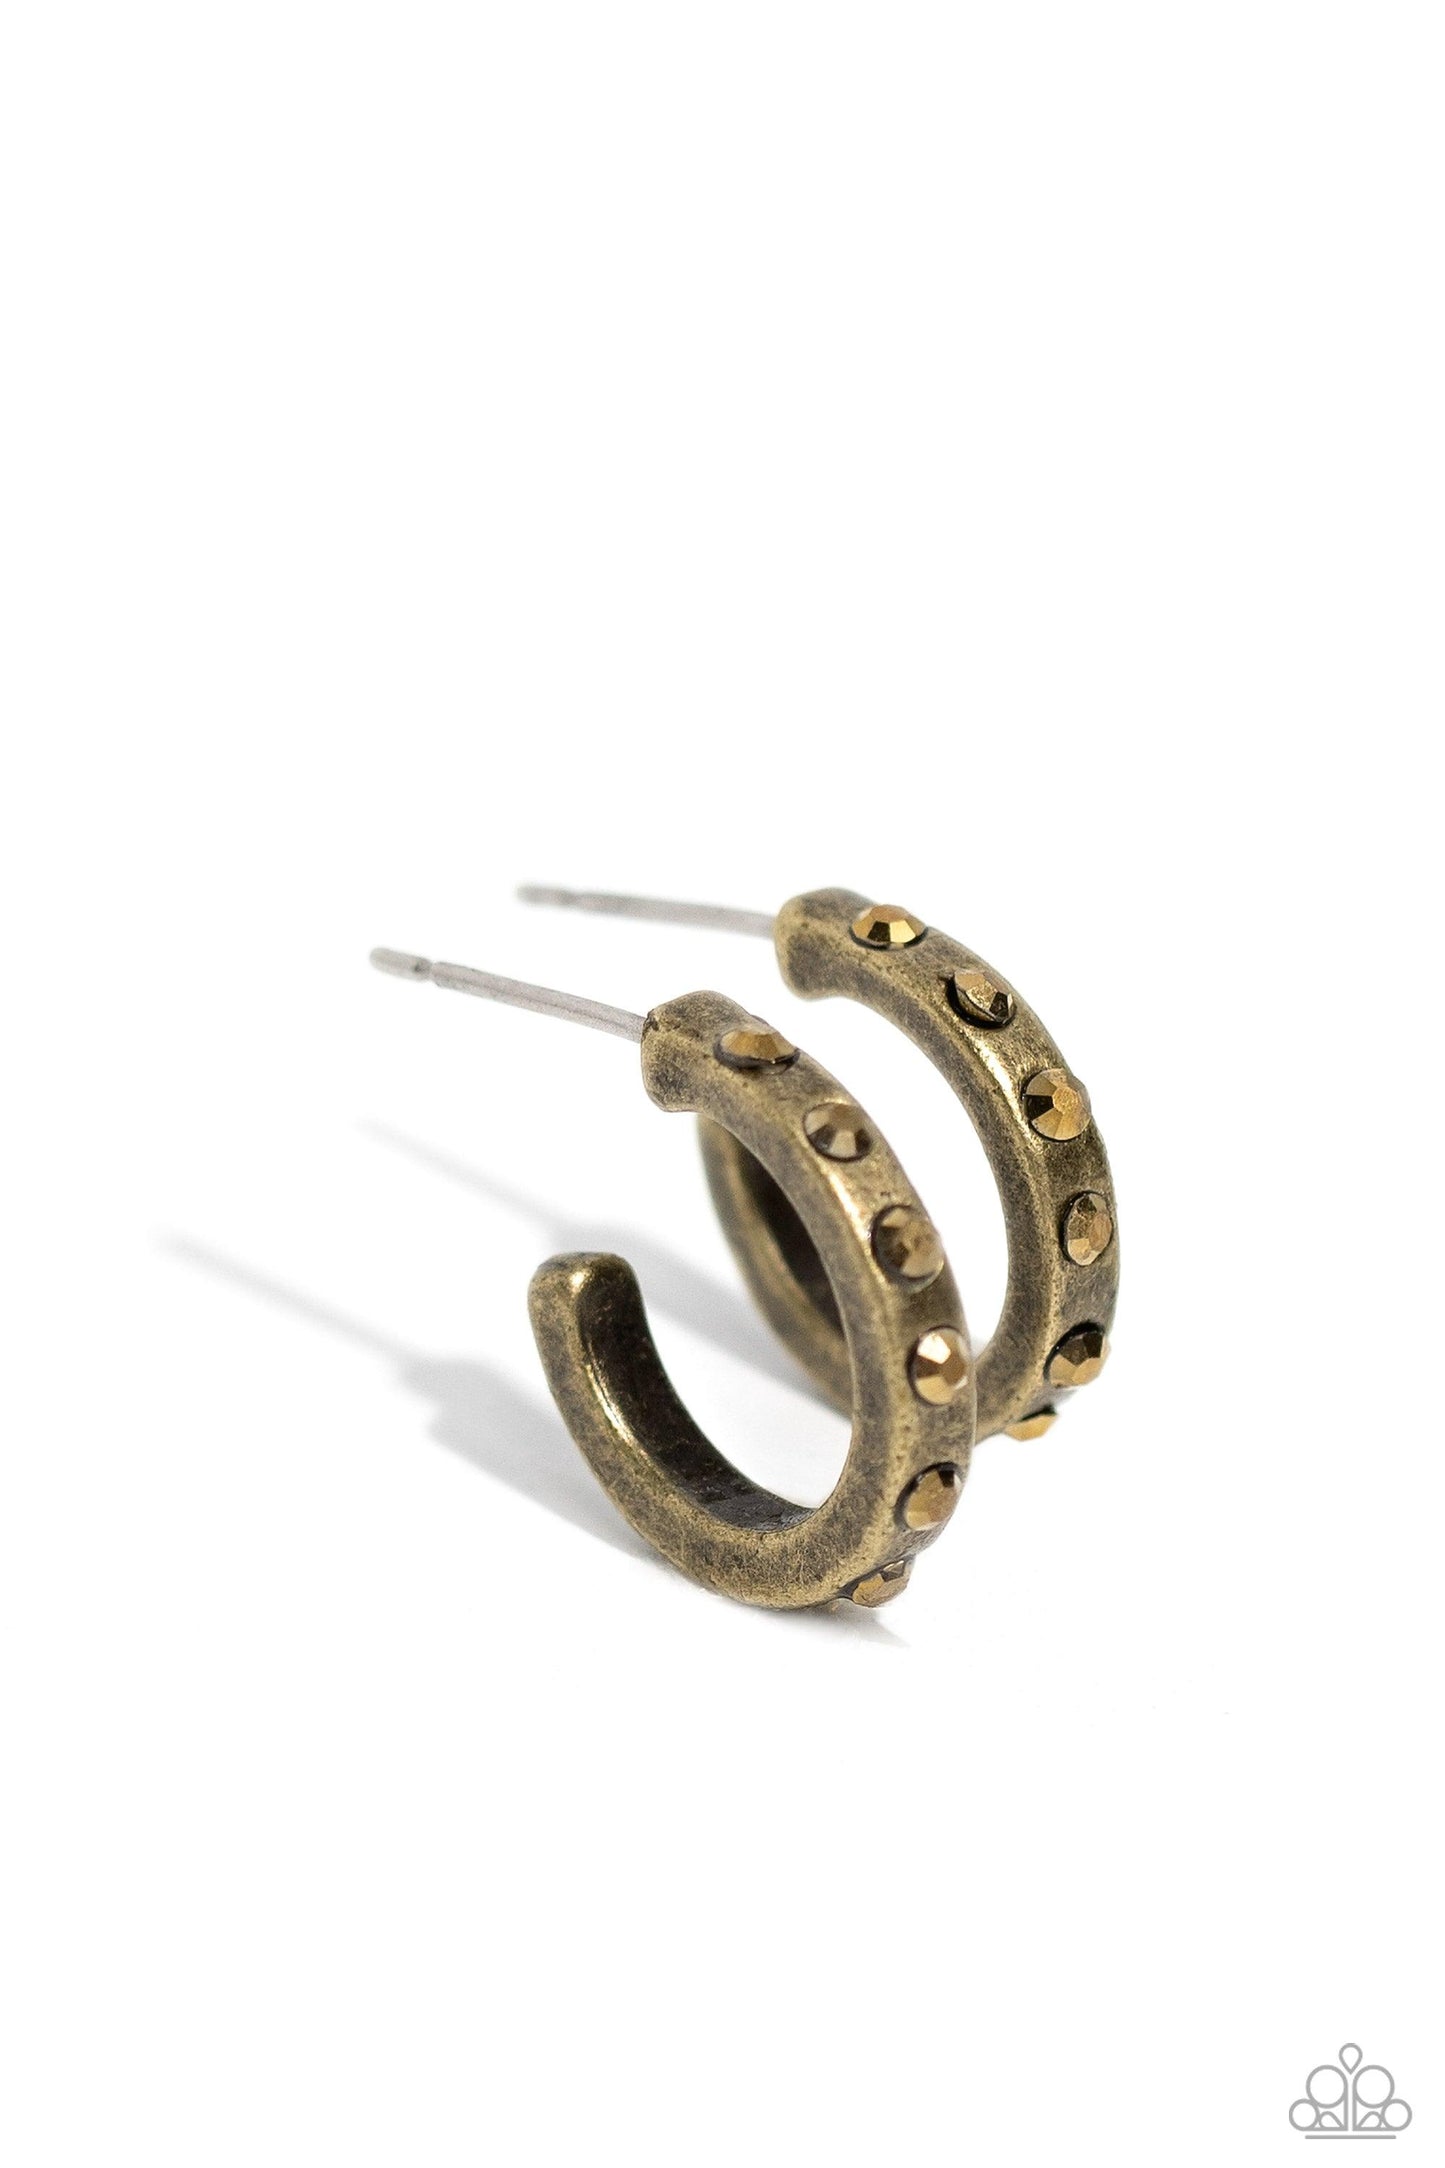 Paparazzi Accessories - Gallant Glitz - Brass Dainty Hoop Earrings - Bling by JessieK